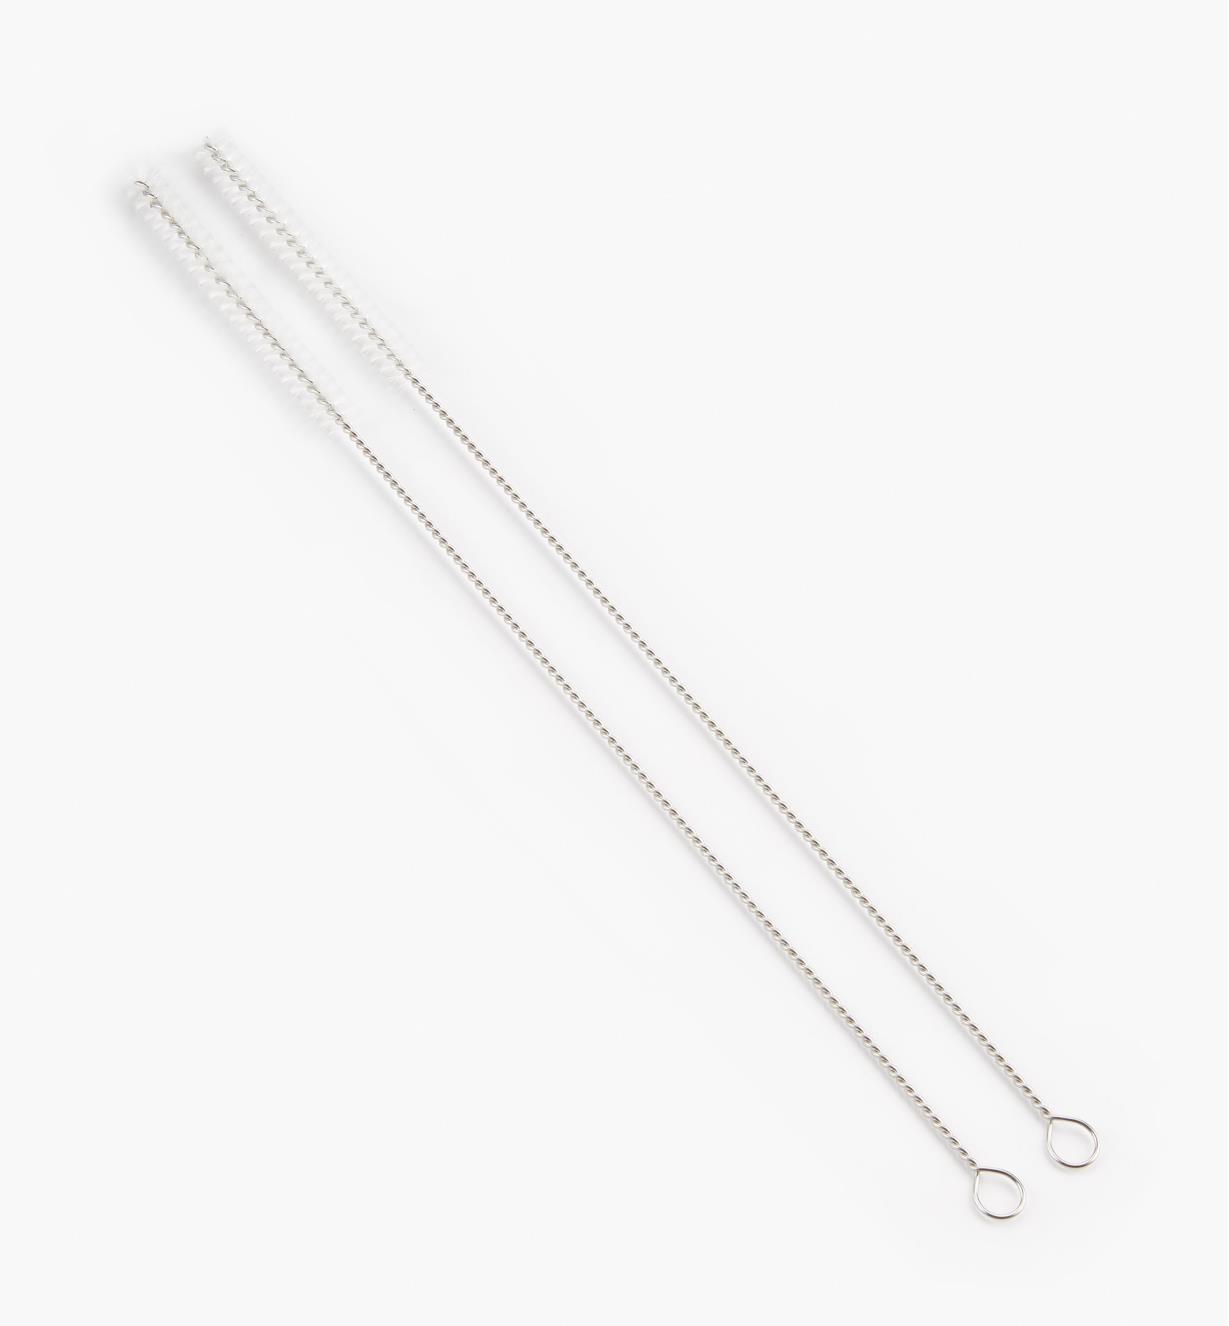 DB406 - Straw Brushes, set of 2